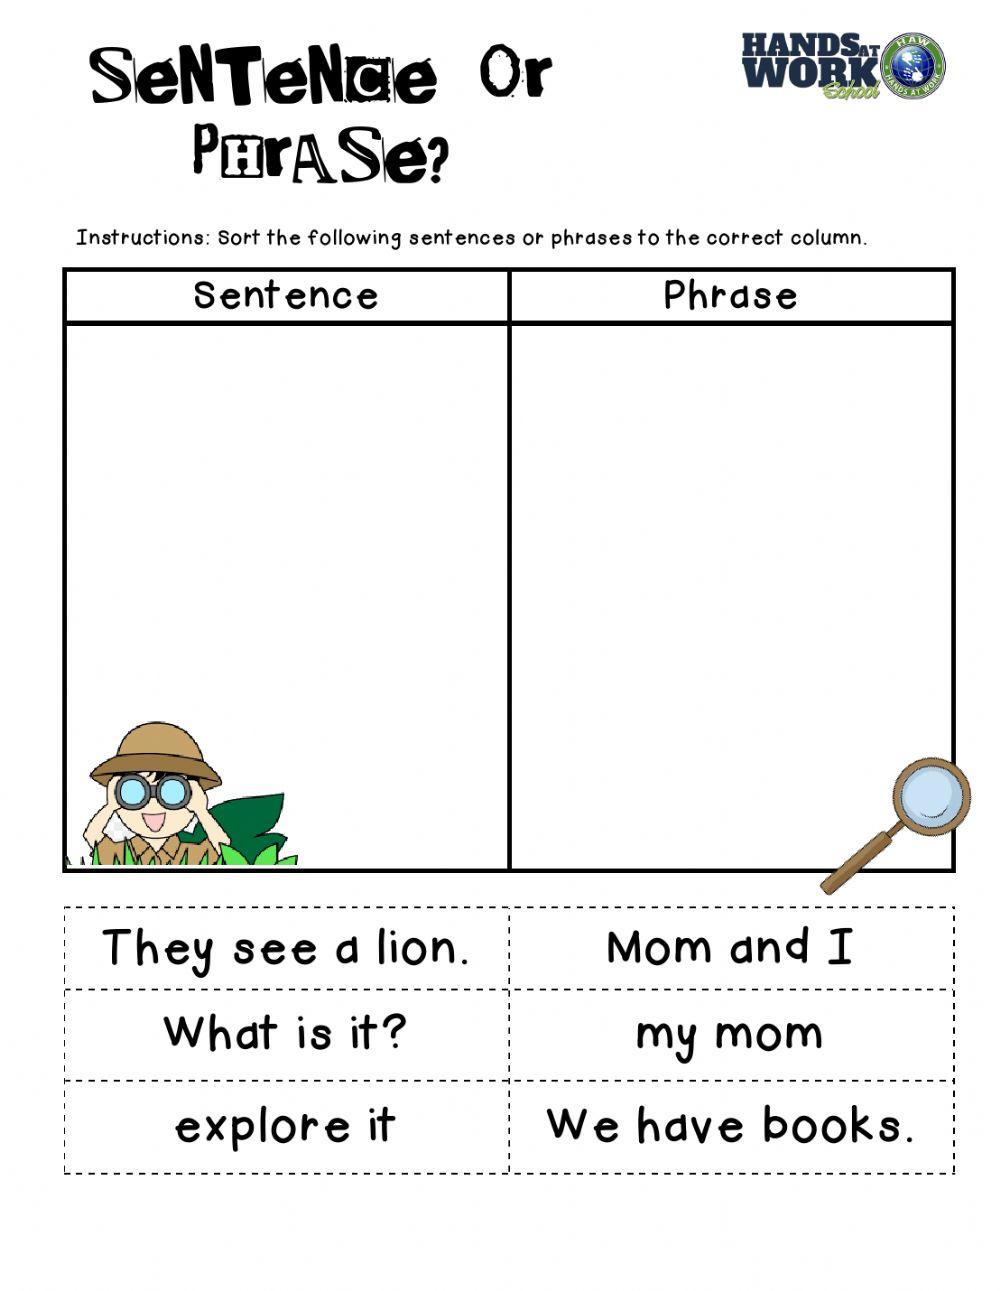 Sentence or phrase